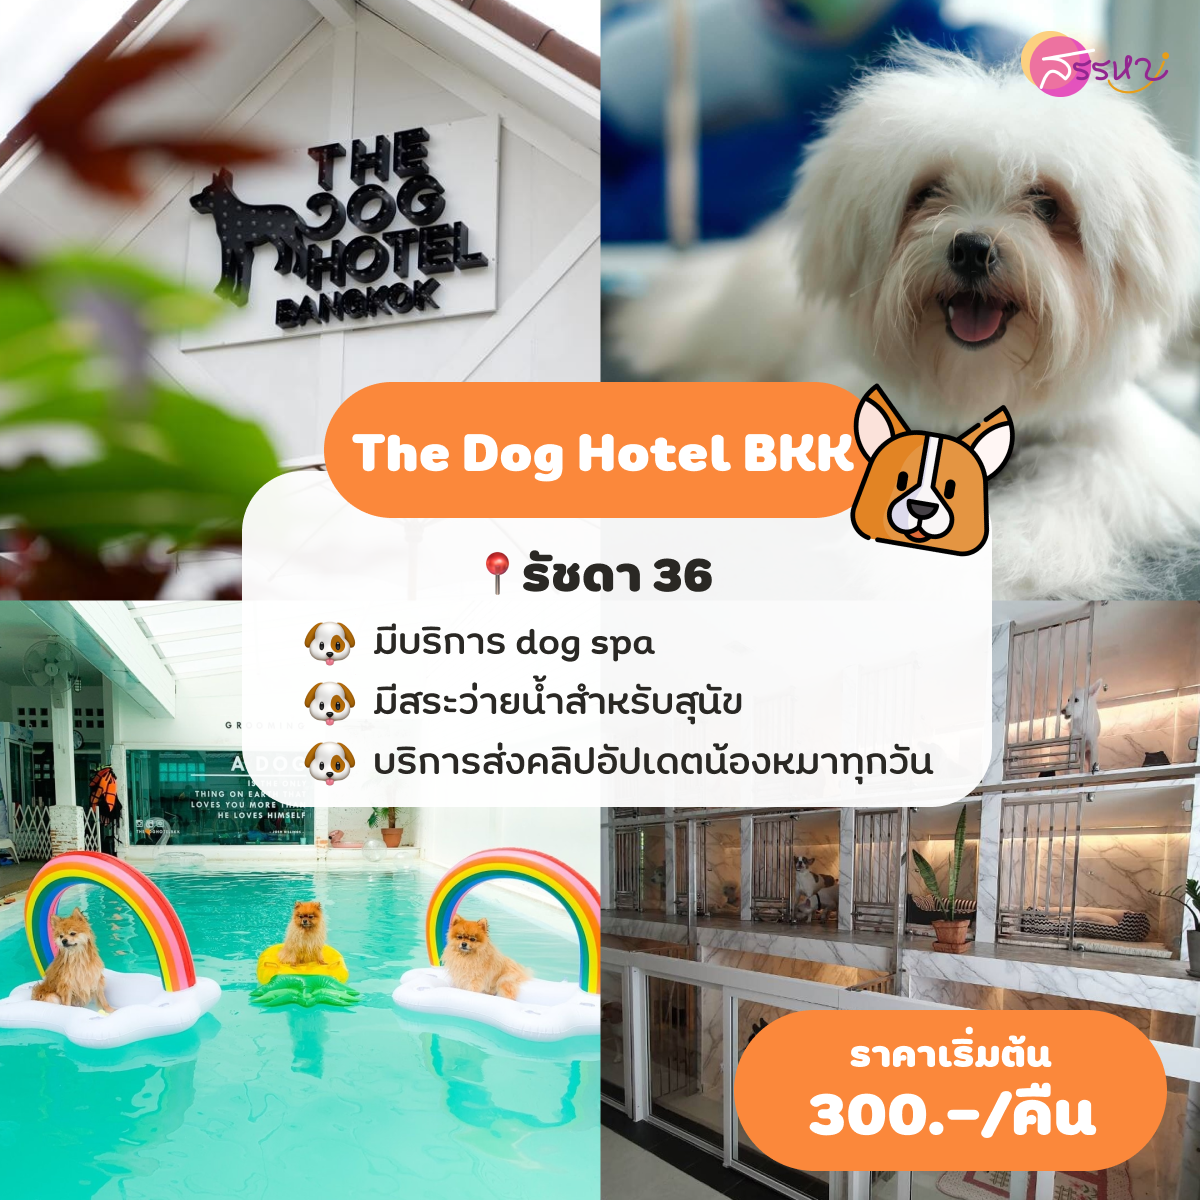 The Dog Hotel BKK